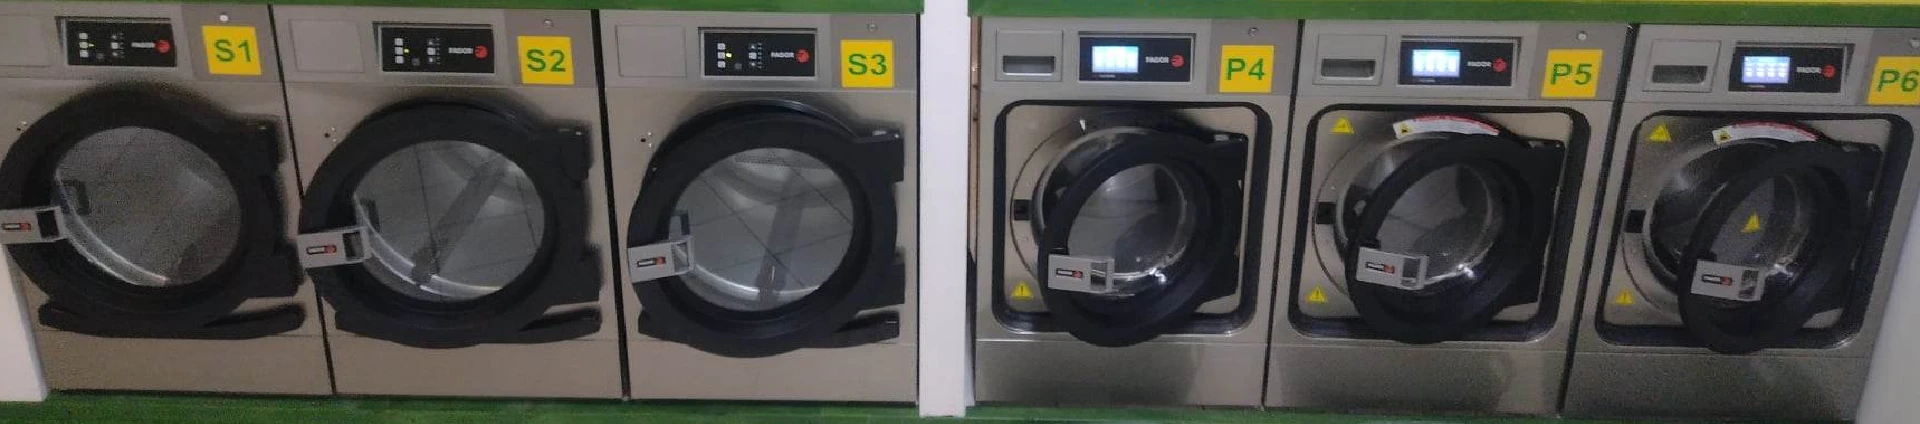 automaty do prania